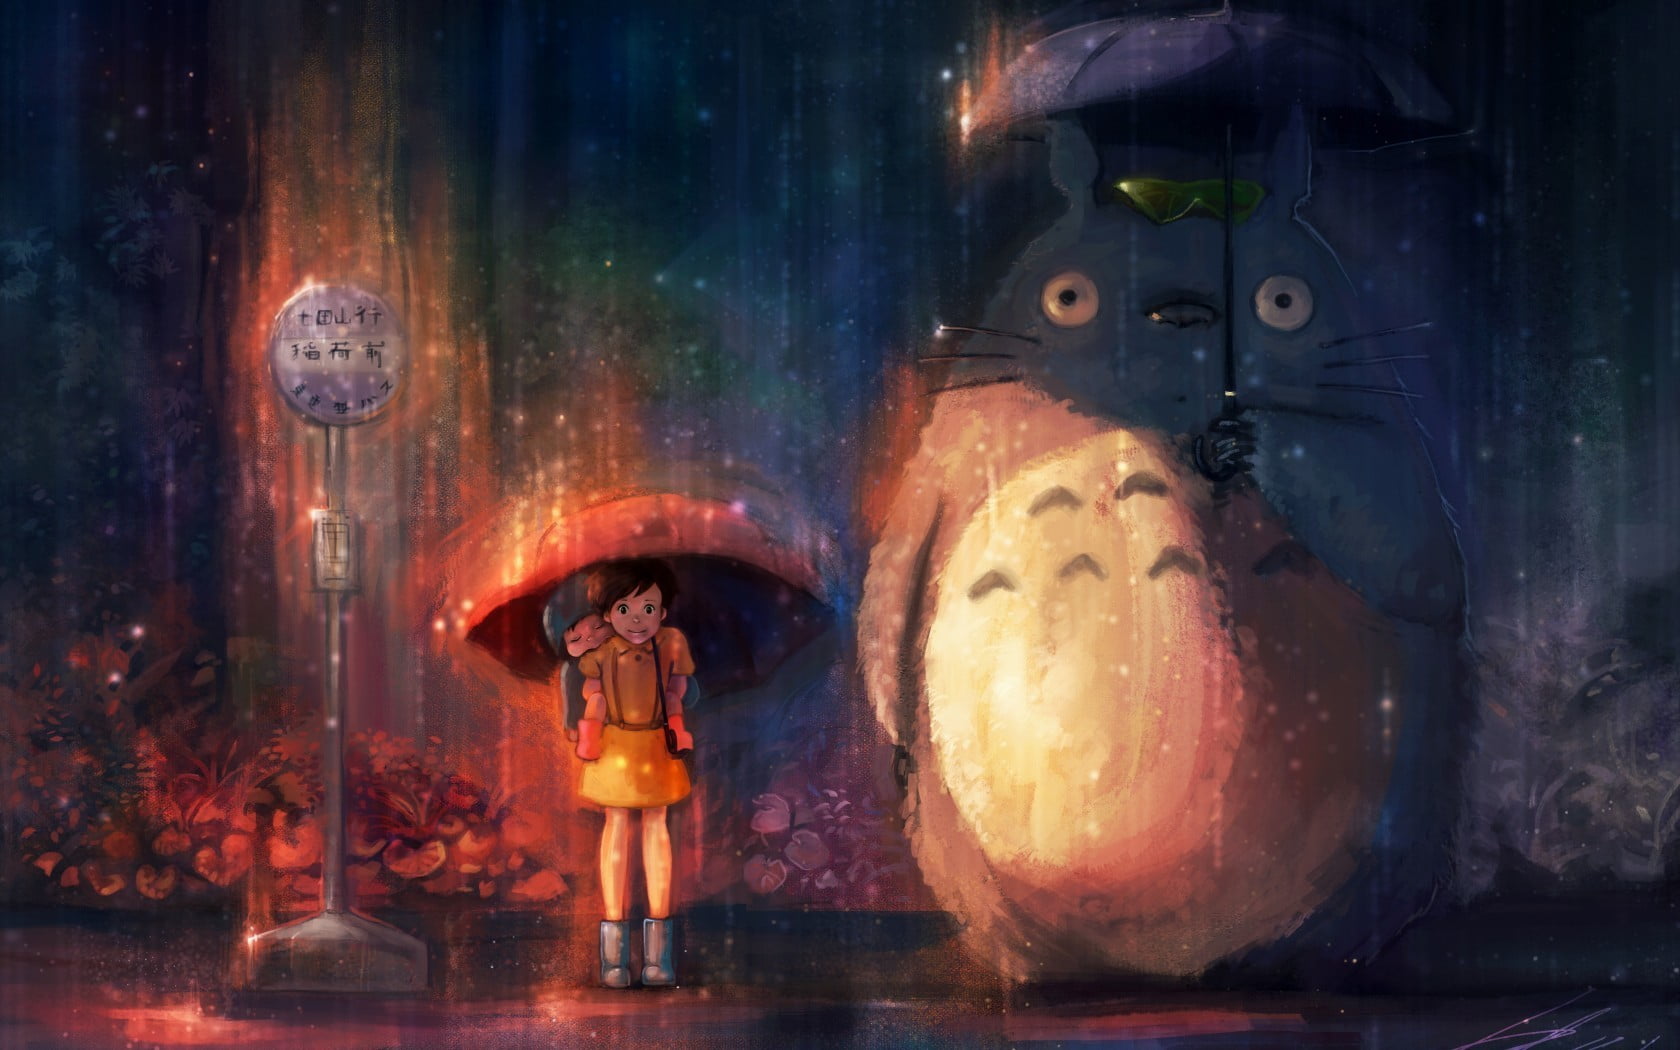 Totoro wallpaper, Studio Ghibli, anime, My Neighbor Totoro, night